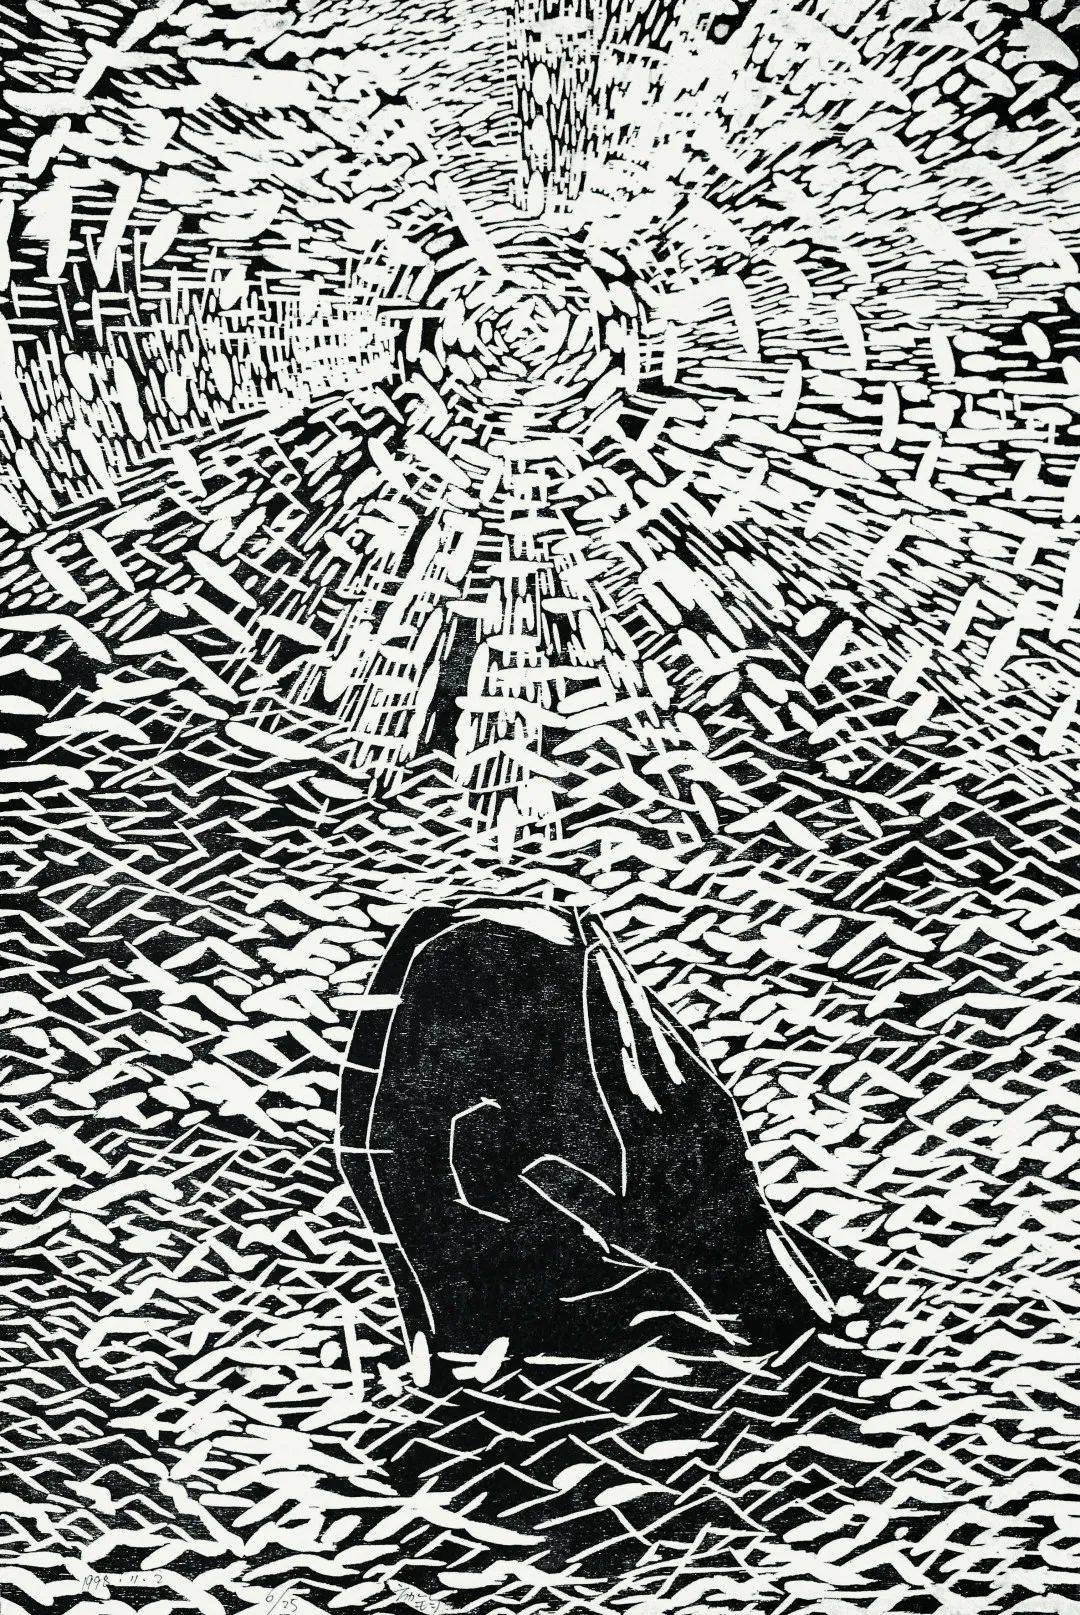 方力钧 木刻版画 122×82cm 1998年